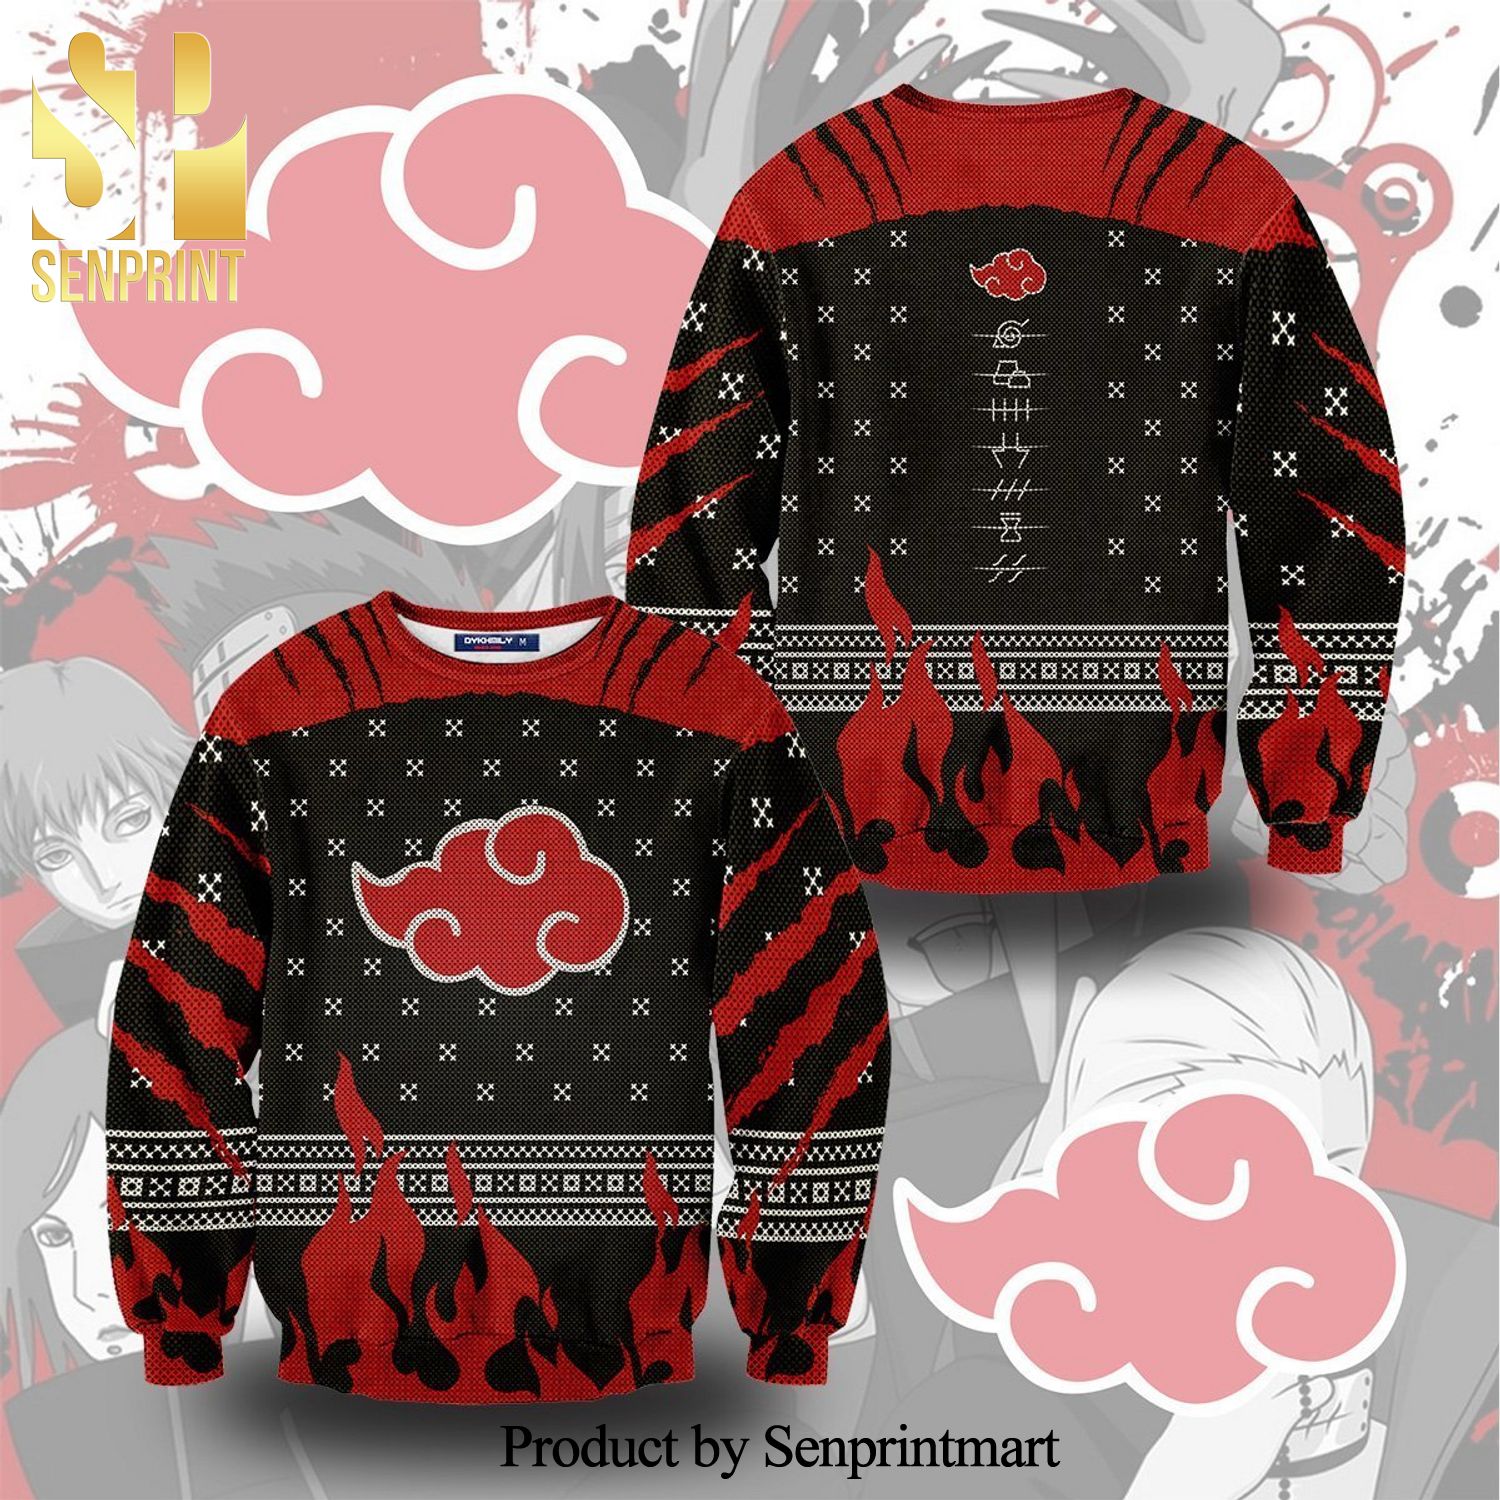 Akatsuki Pride Naruto Snowflake Manga Anime Knitted Ugly Christmas Sweater